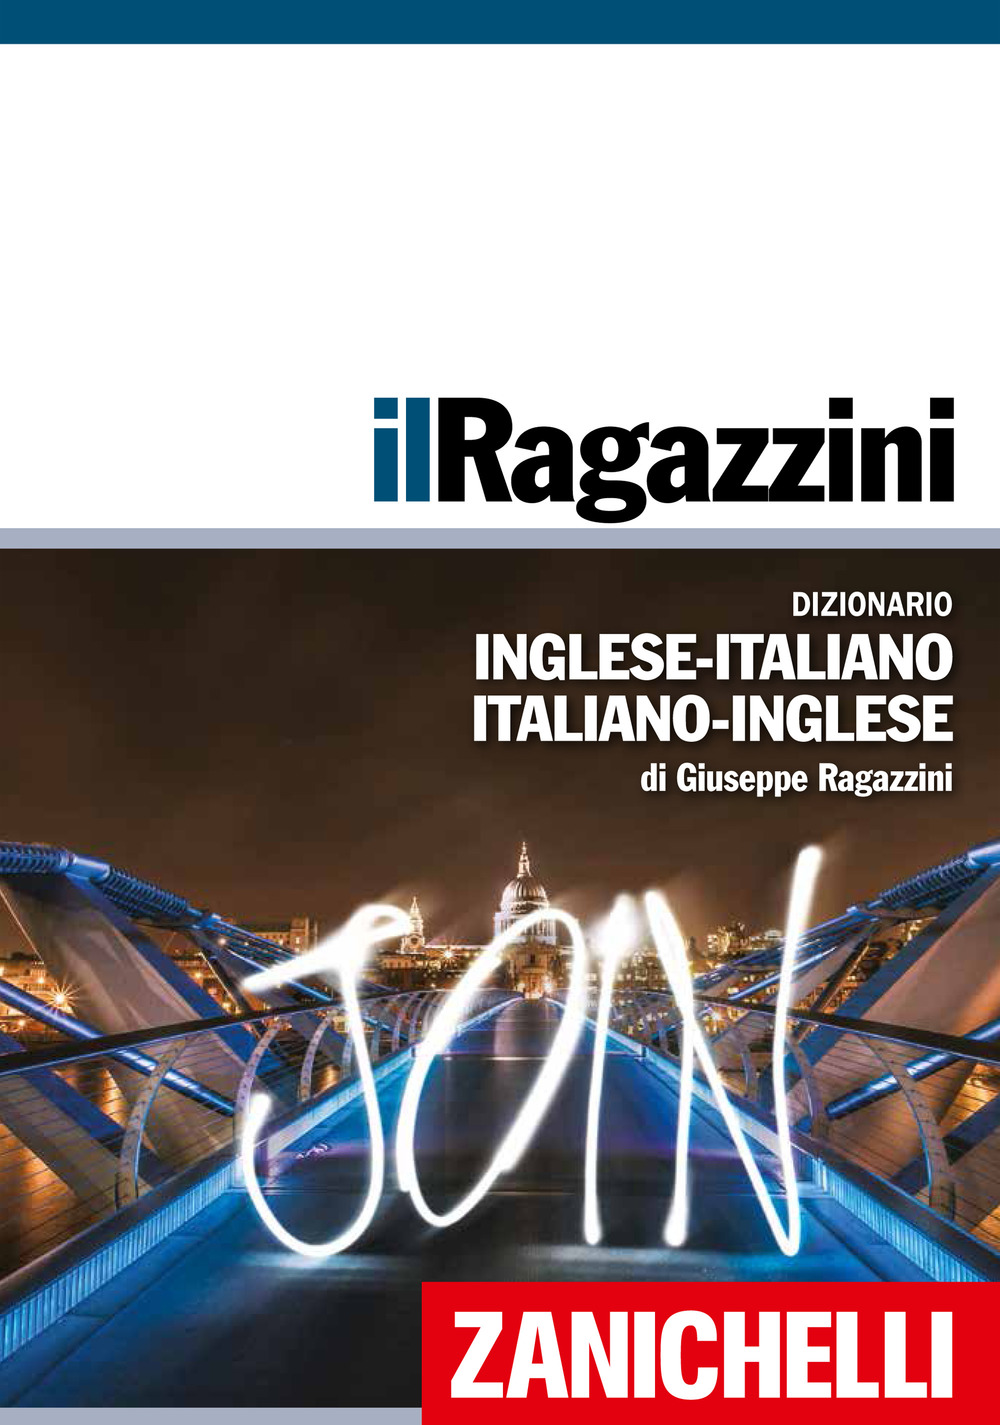 Il Ragazzini. Dizionario inglese-italiano, italiano-inglese